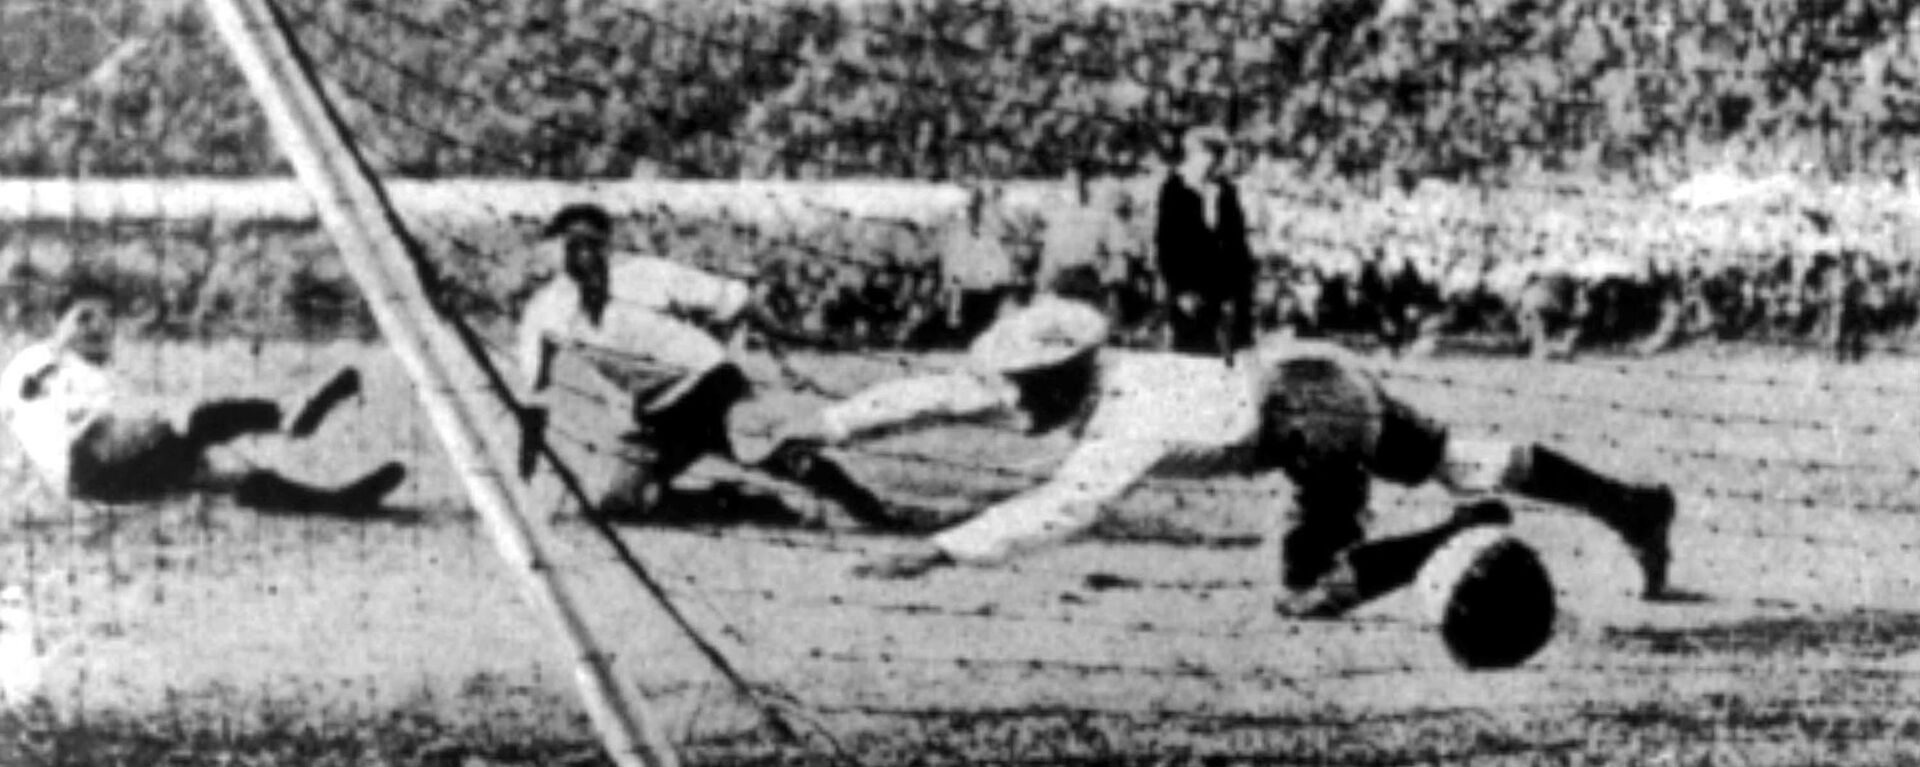 Gol de Uruguay a Argentina en Copa del Mundo de 1930 - Sputnik Mundo, 1920, 13.07.2020